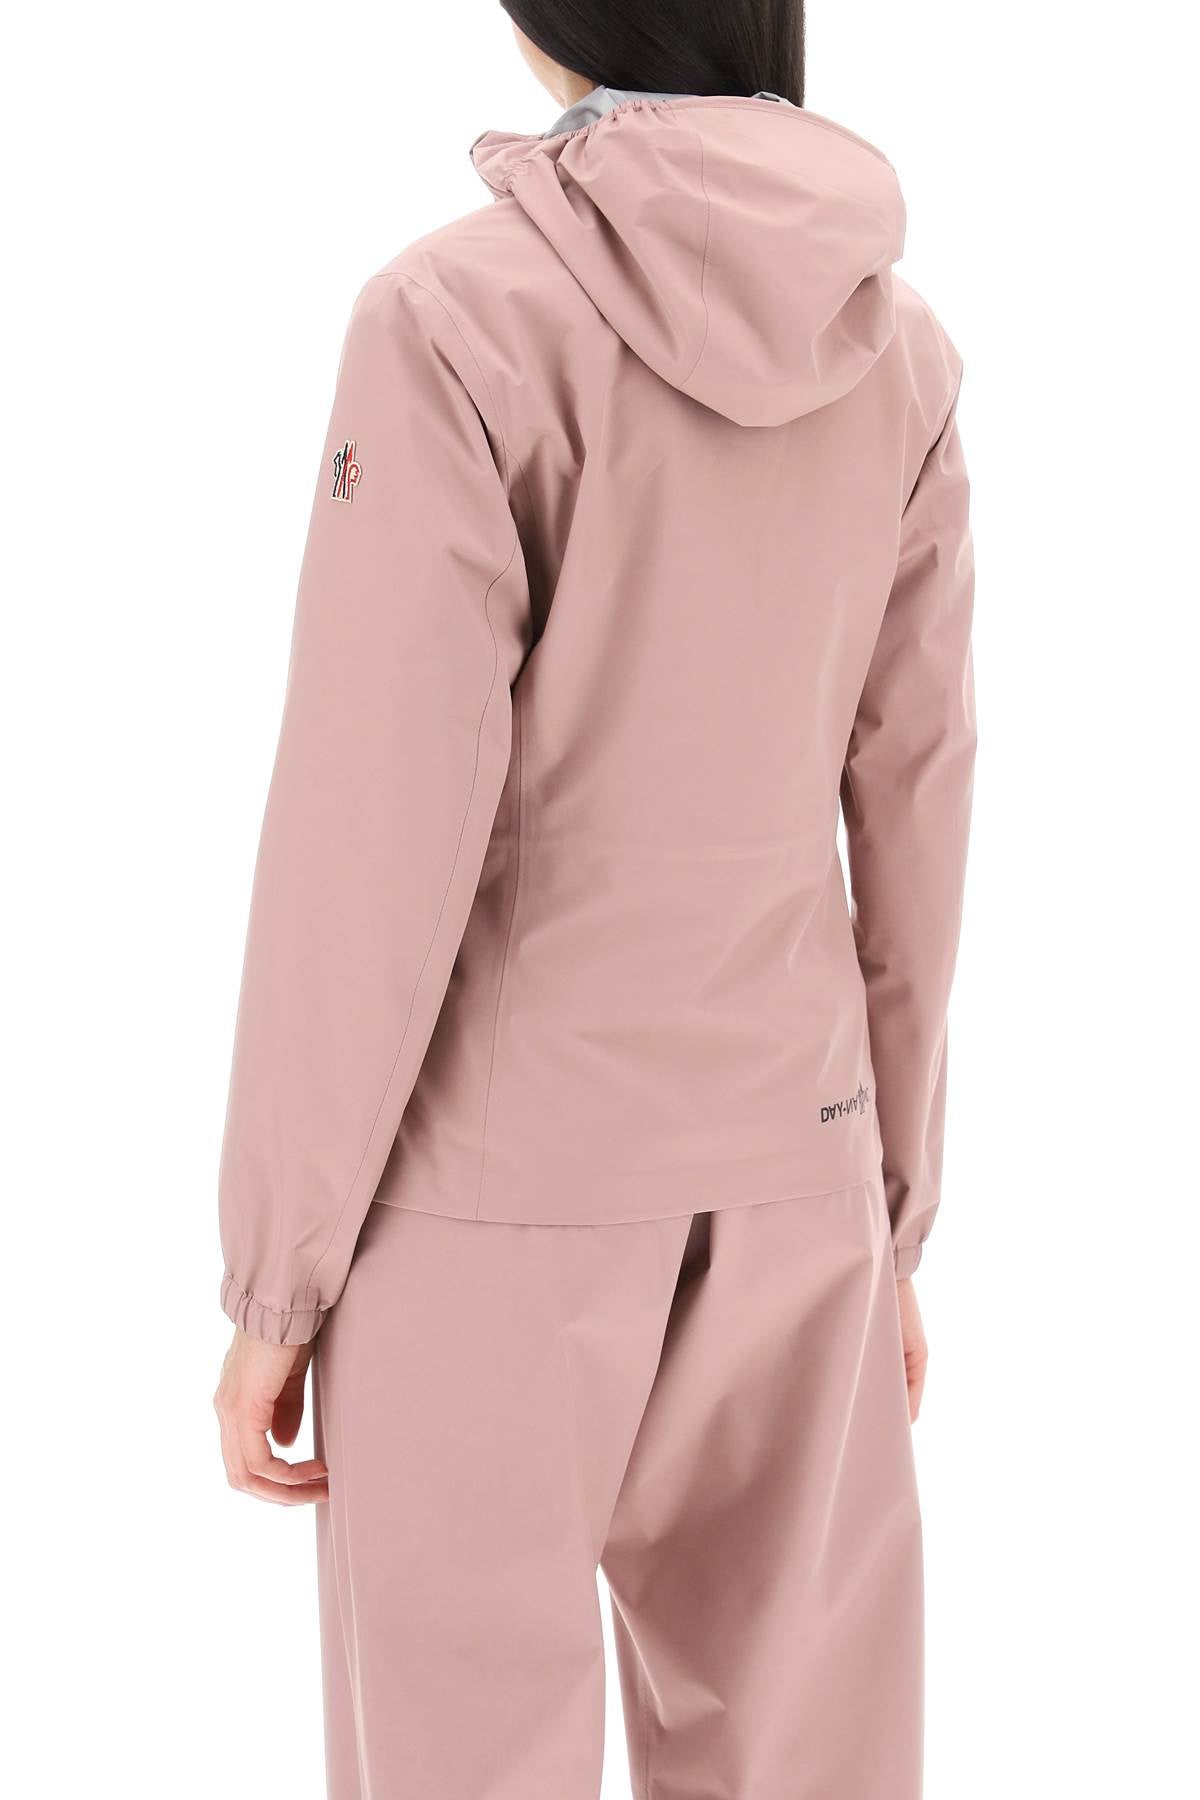 Áo khoác hồng nhẹ từ bộ sưu tập SS24 của thương hiệu thời trang cao cấp